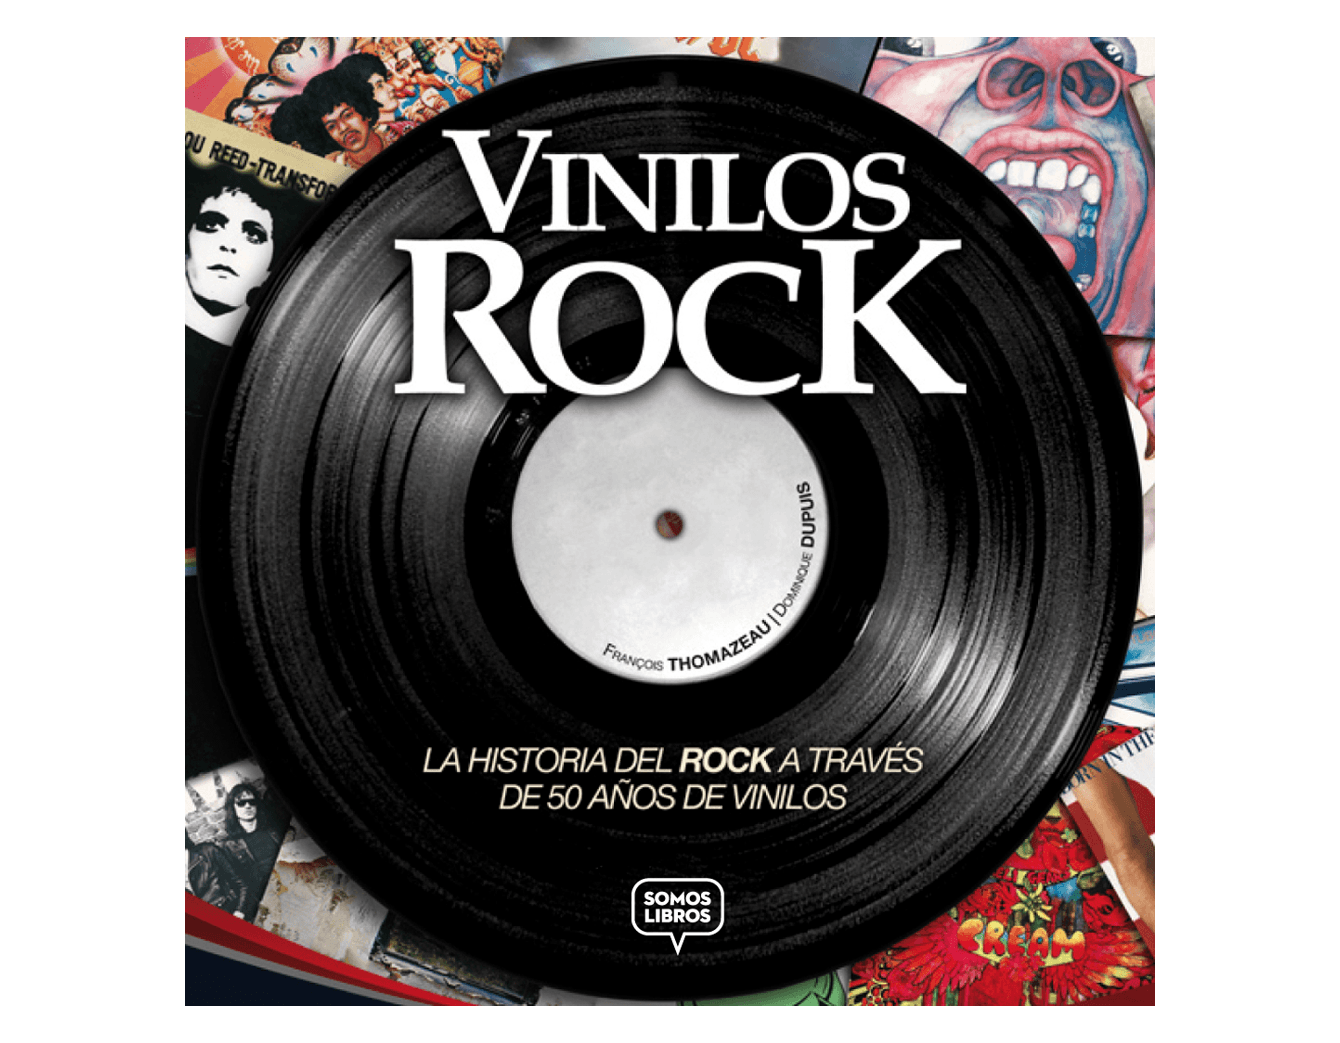 "Vinilos Rock" de Francois Thomazeau/ Dominique Dupuis